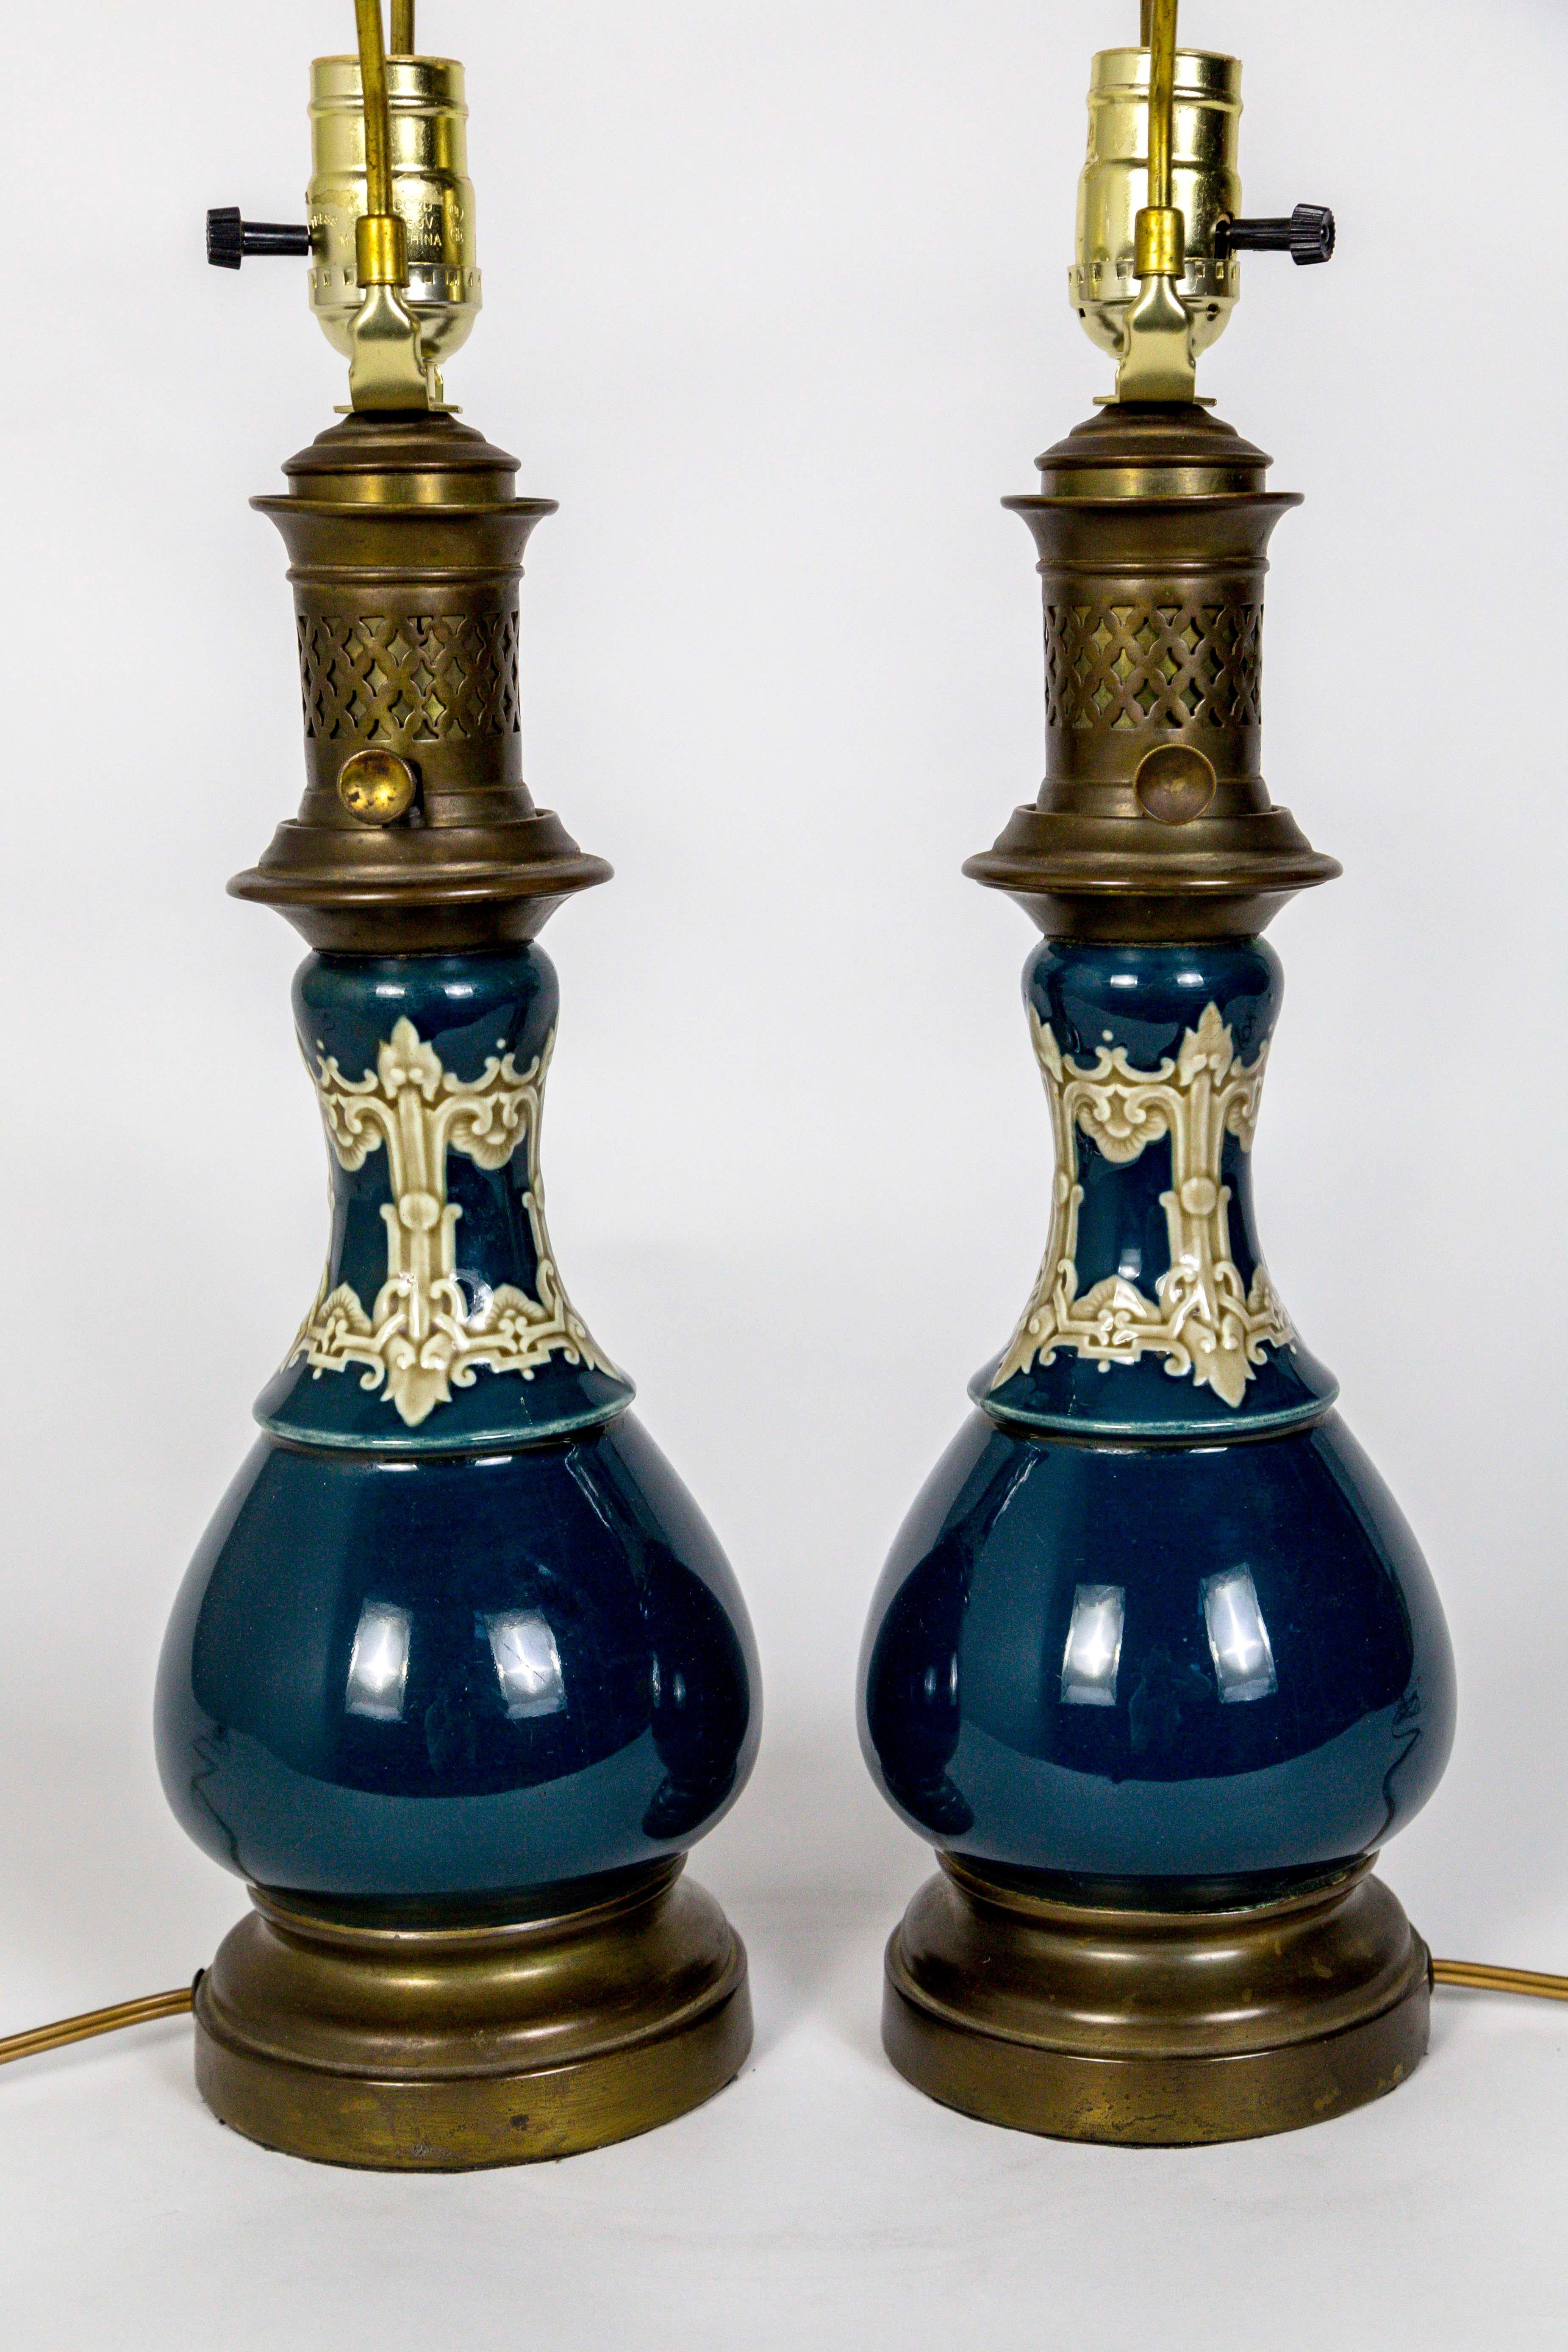 Danish Dark Turquoise Ceramic 19th Century Converted Kerosine Lamps, Pair For Sale